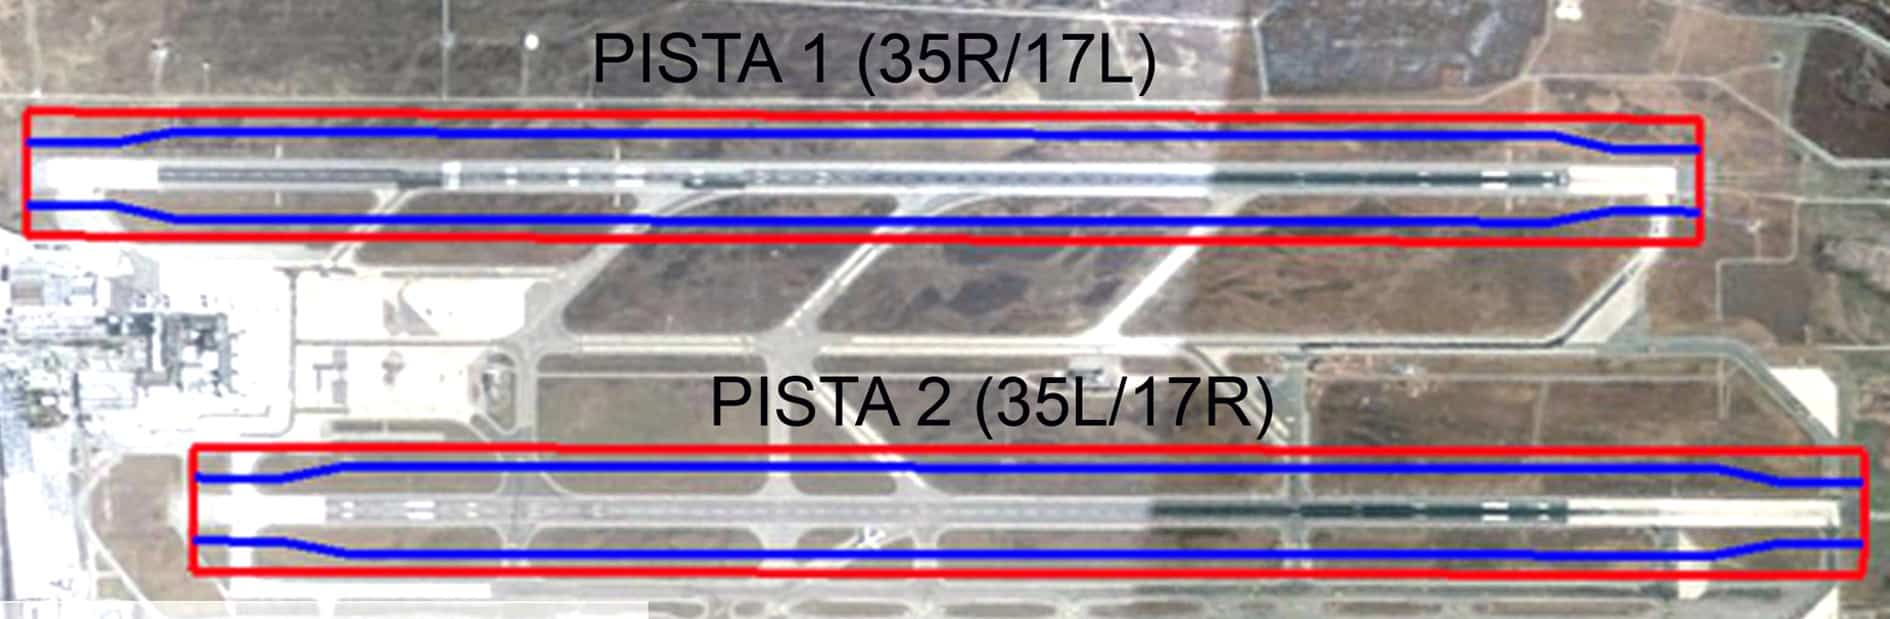 Le strip di pista dell’aeroporto di Milano Malpensa oggetto di adeguamento altimetrico e strutturale